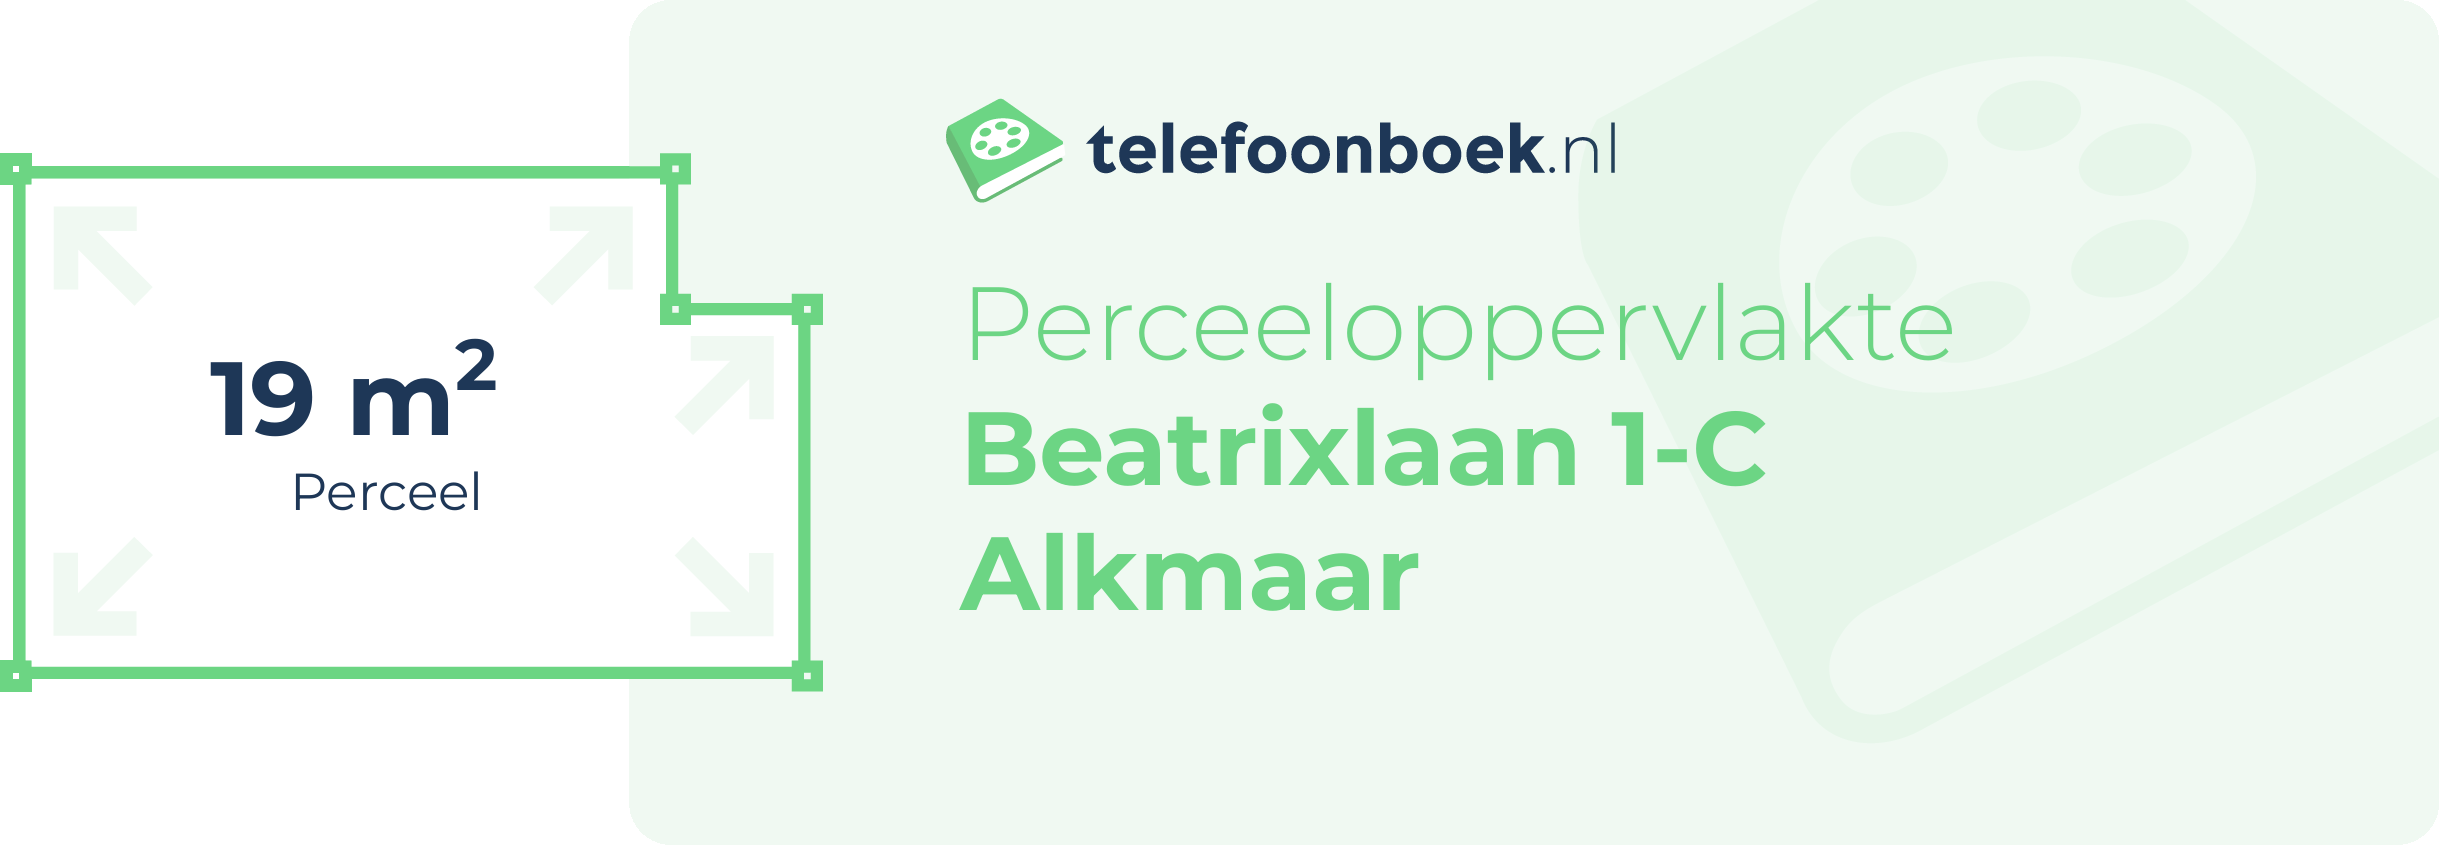 Perceeloppervlakte Beatrixlaan 1-C Alkmaar